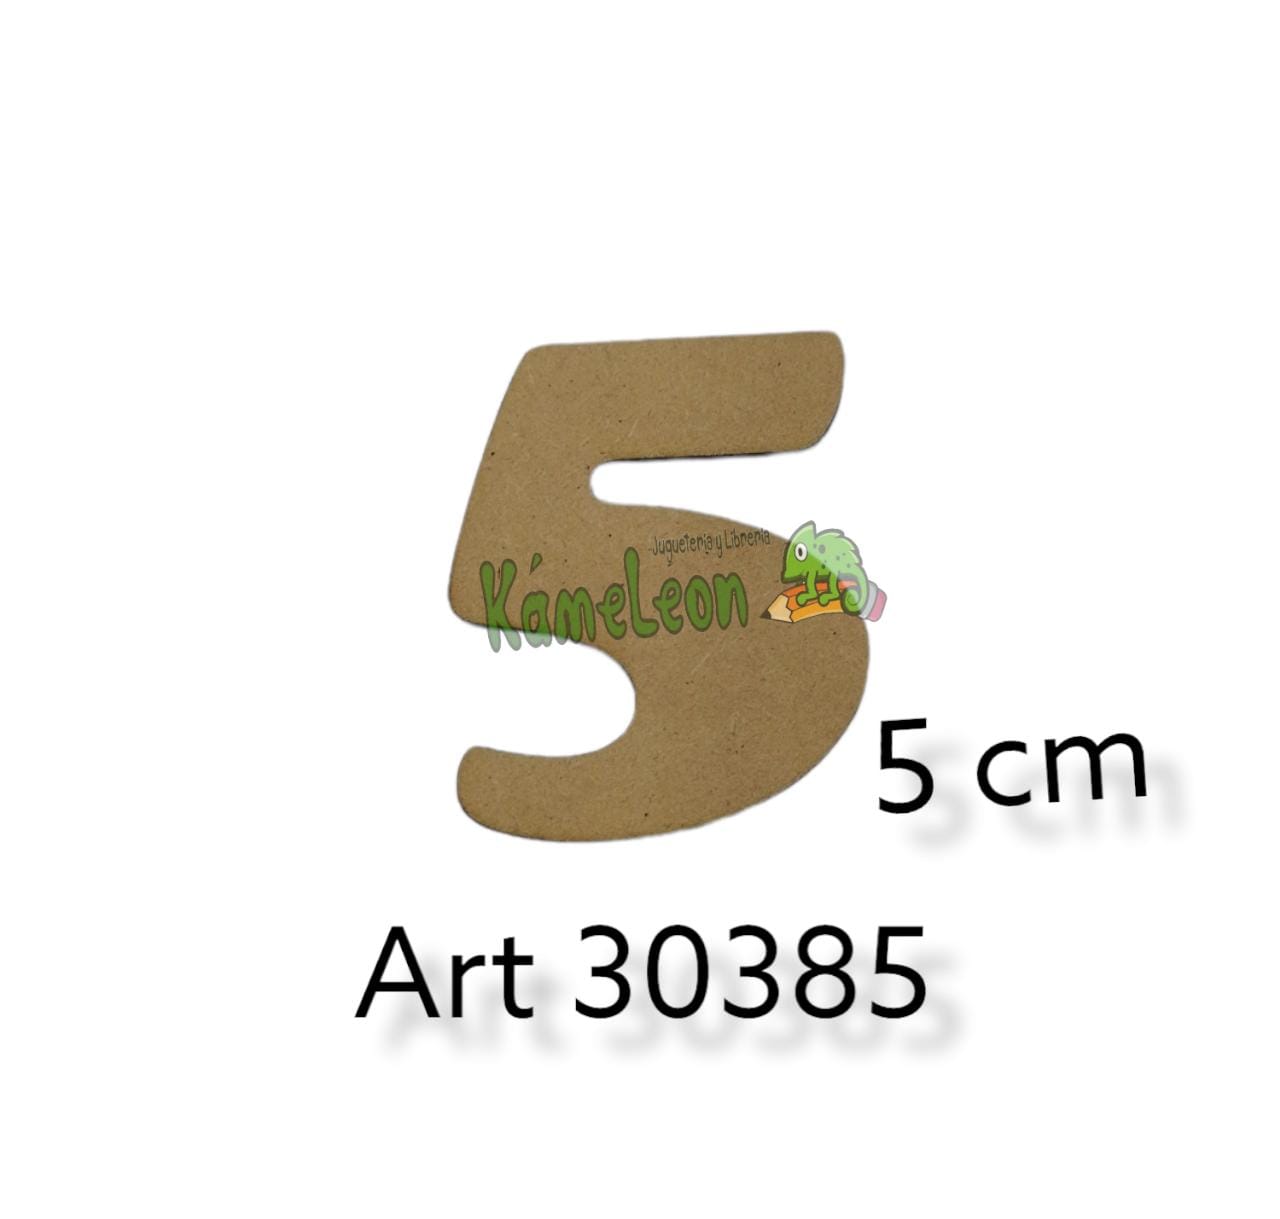 Numero 5 cm 5 